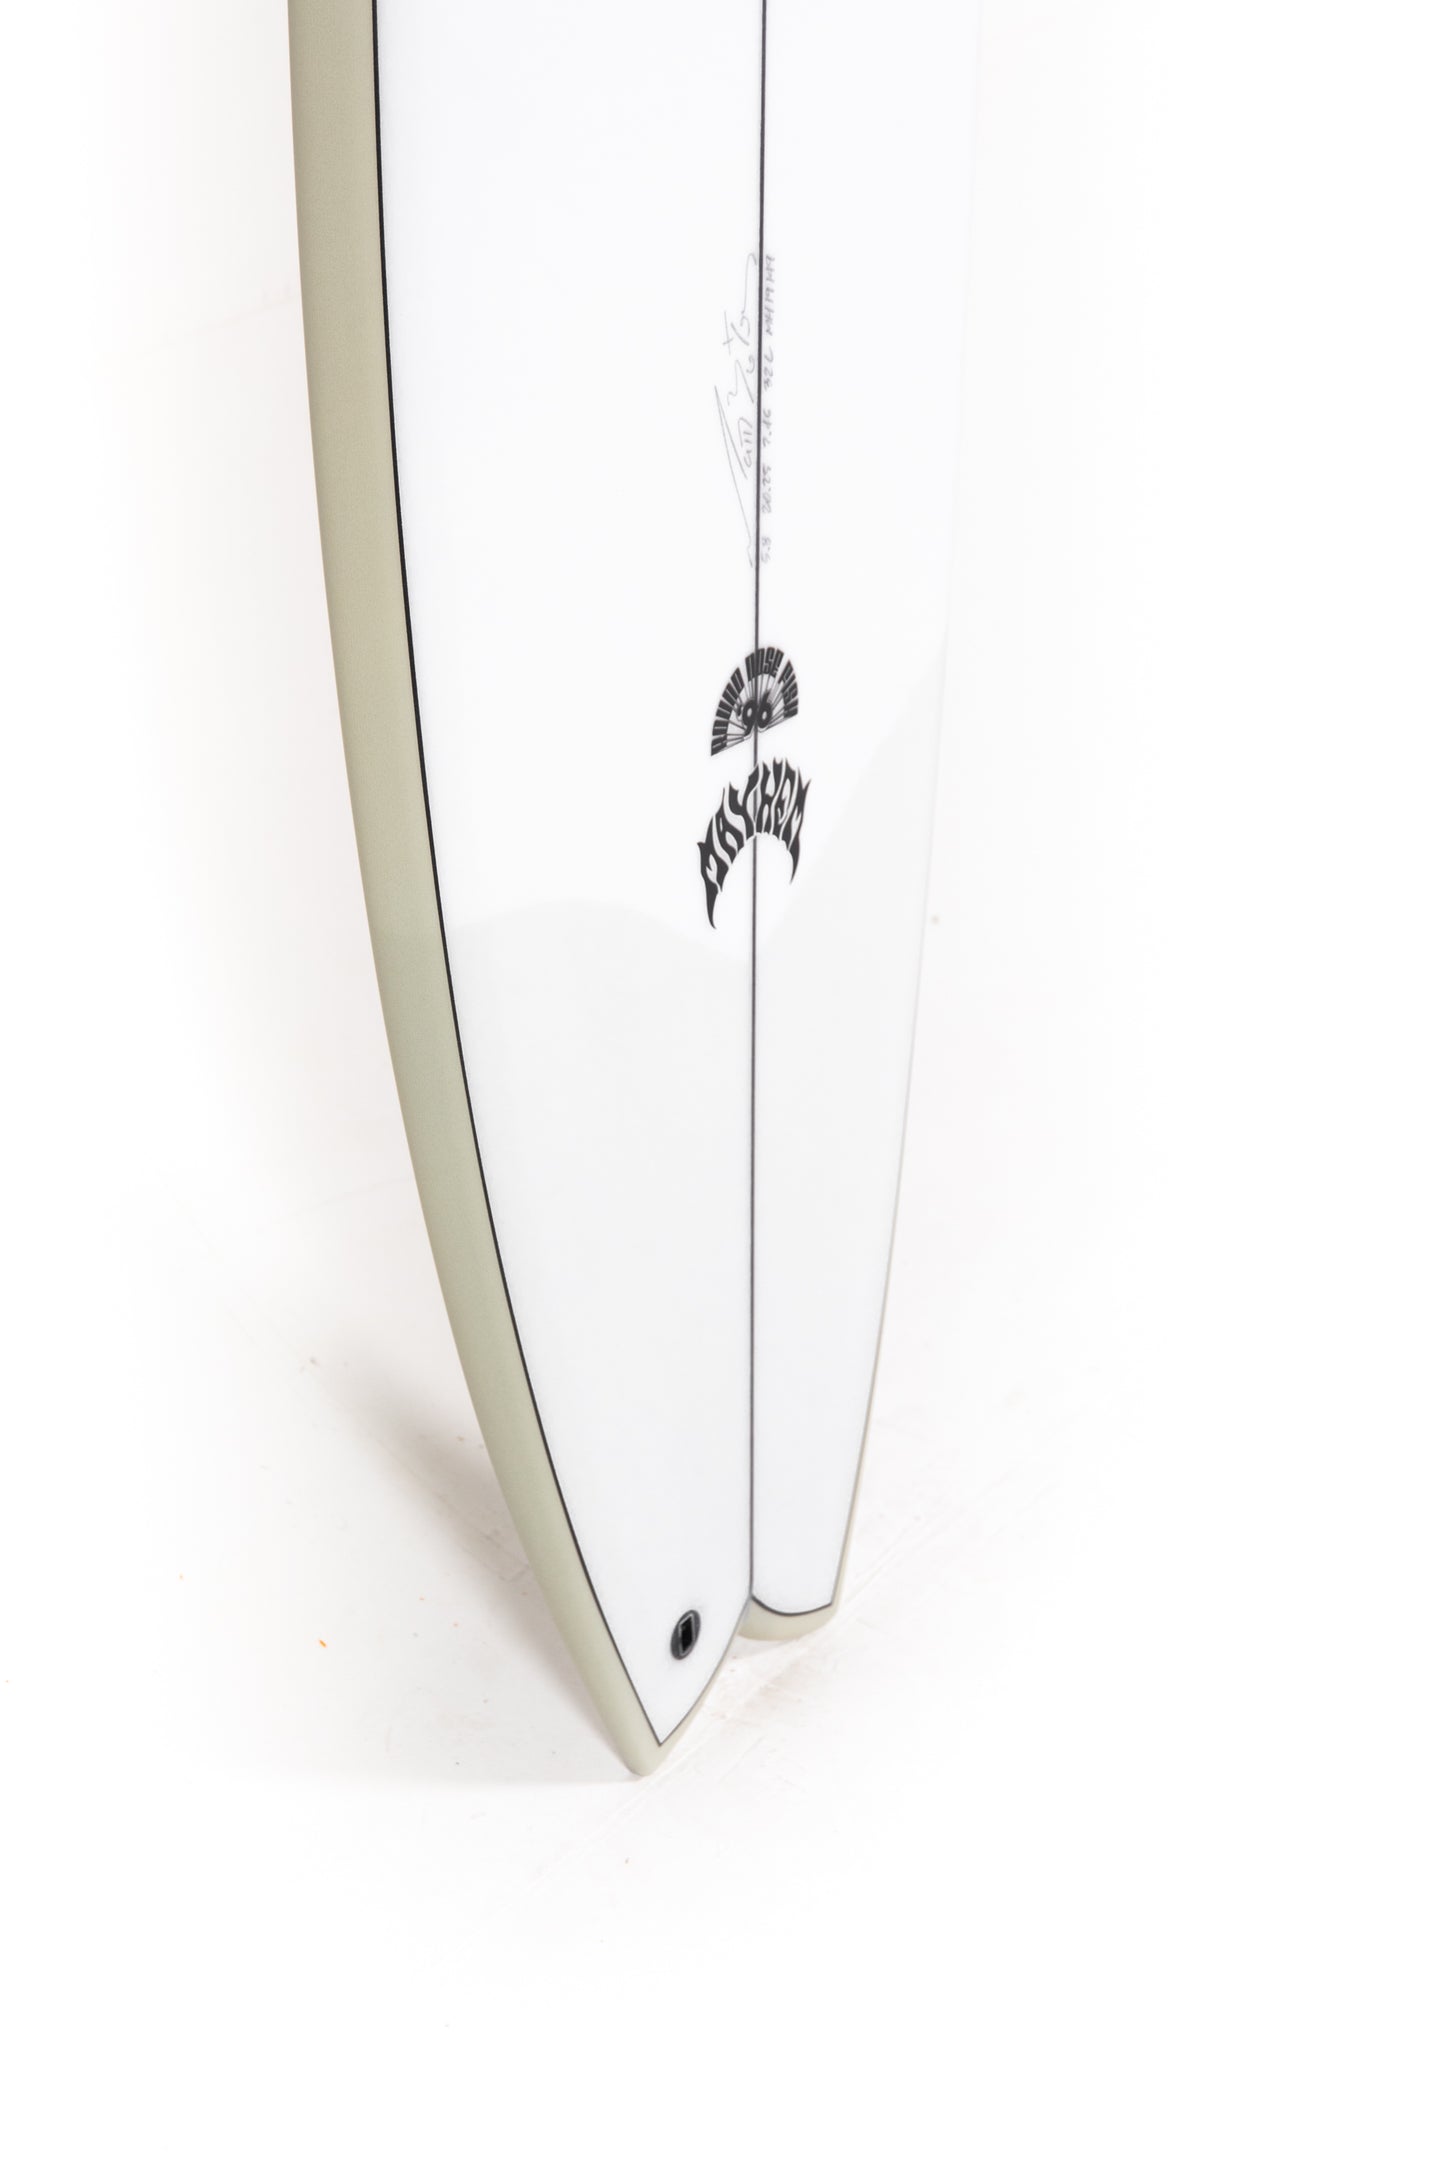 
                  
                    Pukas Surf Shop - Lost Surfboard - RNF '96 by Matt Biolos - 5'8"x 20.25" x 2.46 - 32L - MH19149
                  
                